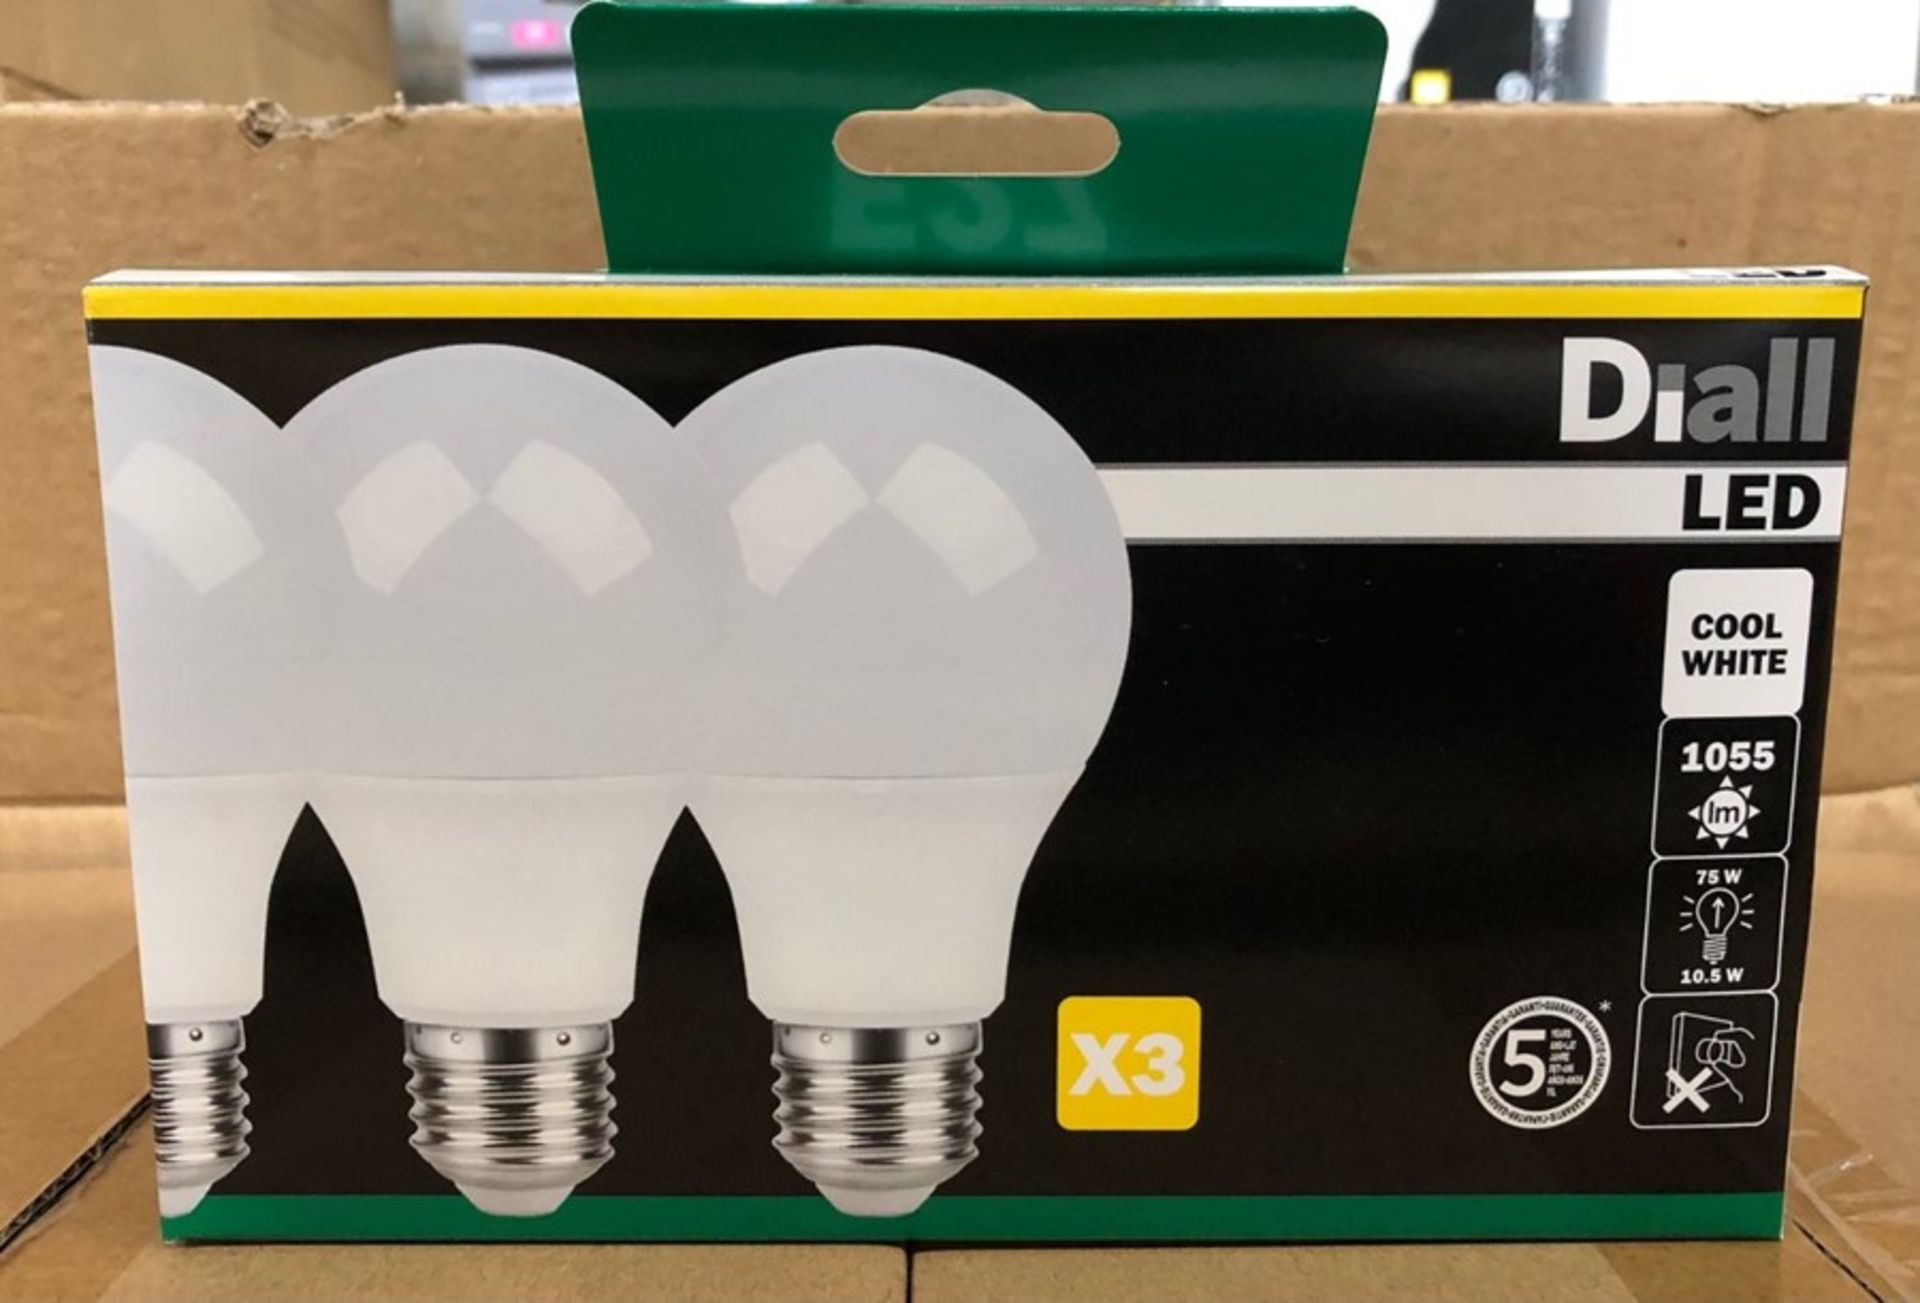 8 X PACKS OF DIALL LED E27 GLS LED LIGHT BULKS (3 BULBS PER PACK) / AS NEW